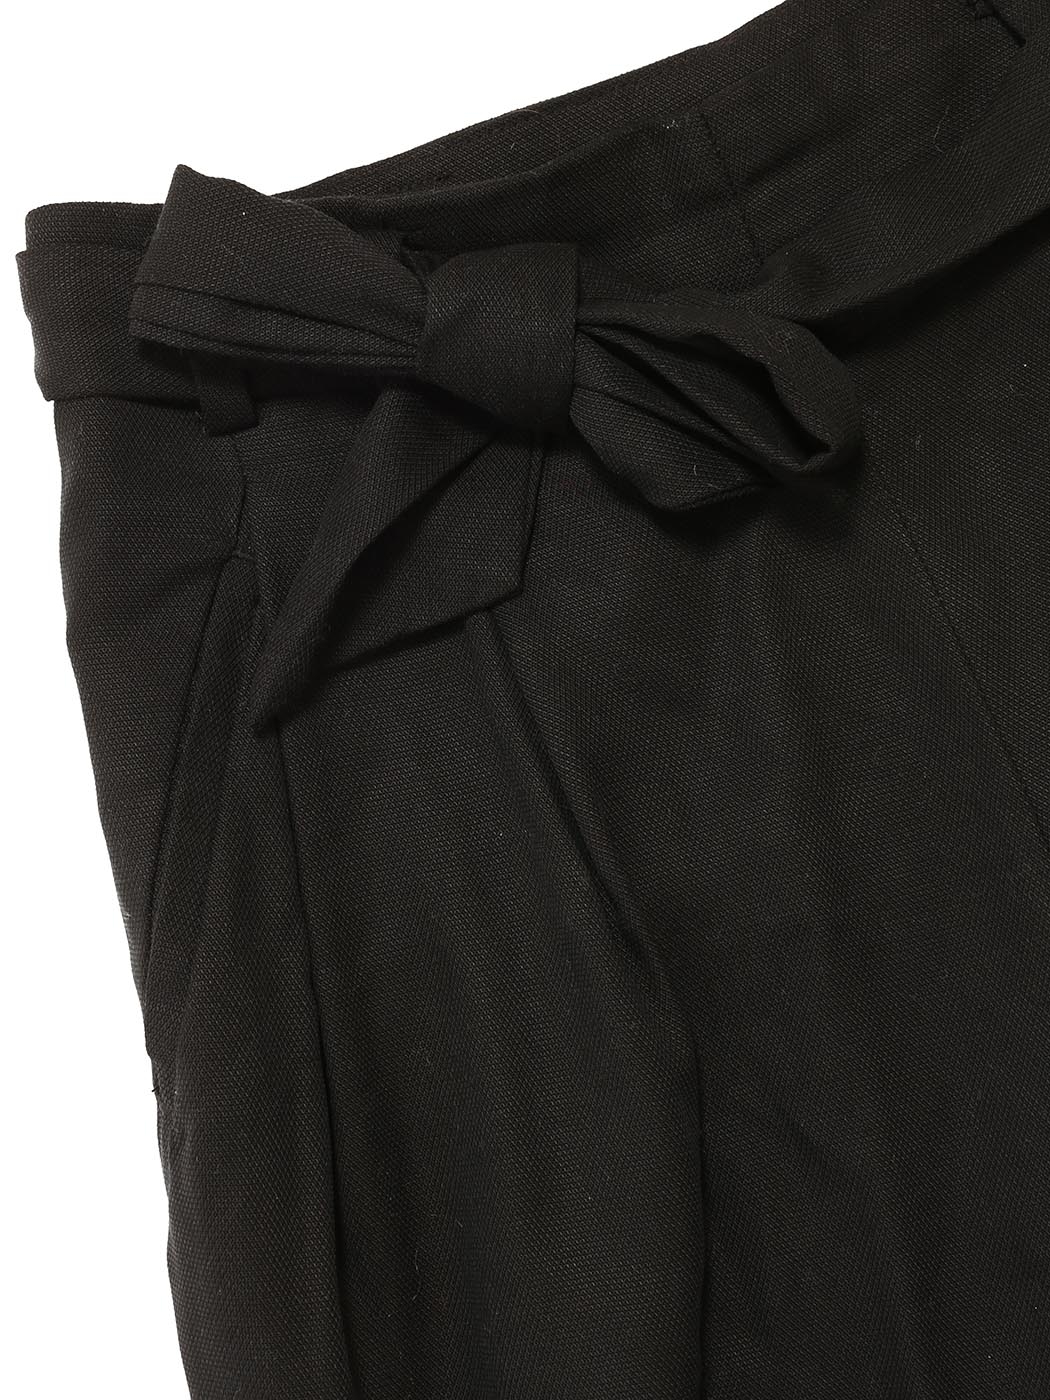 Louise Paris - Black cotton high waist pants with tied belt Size 34